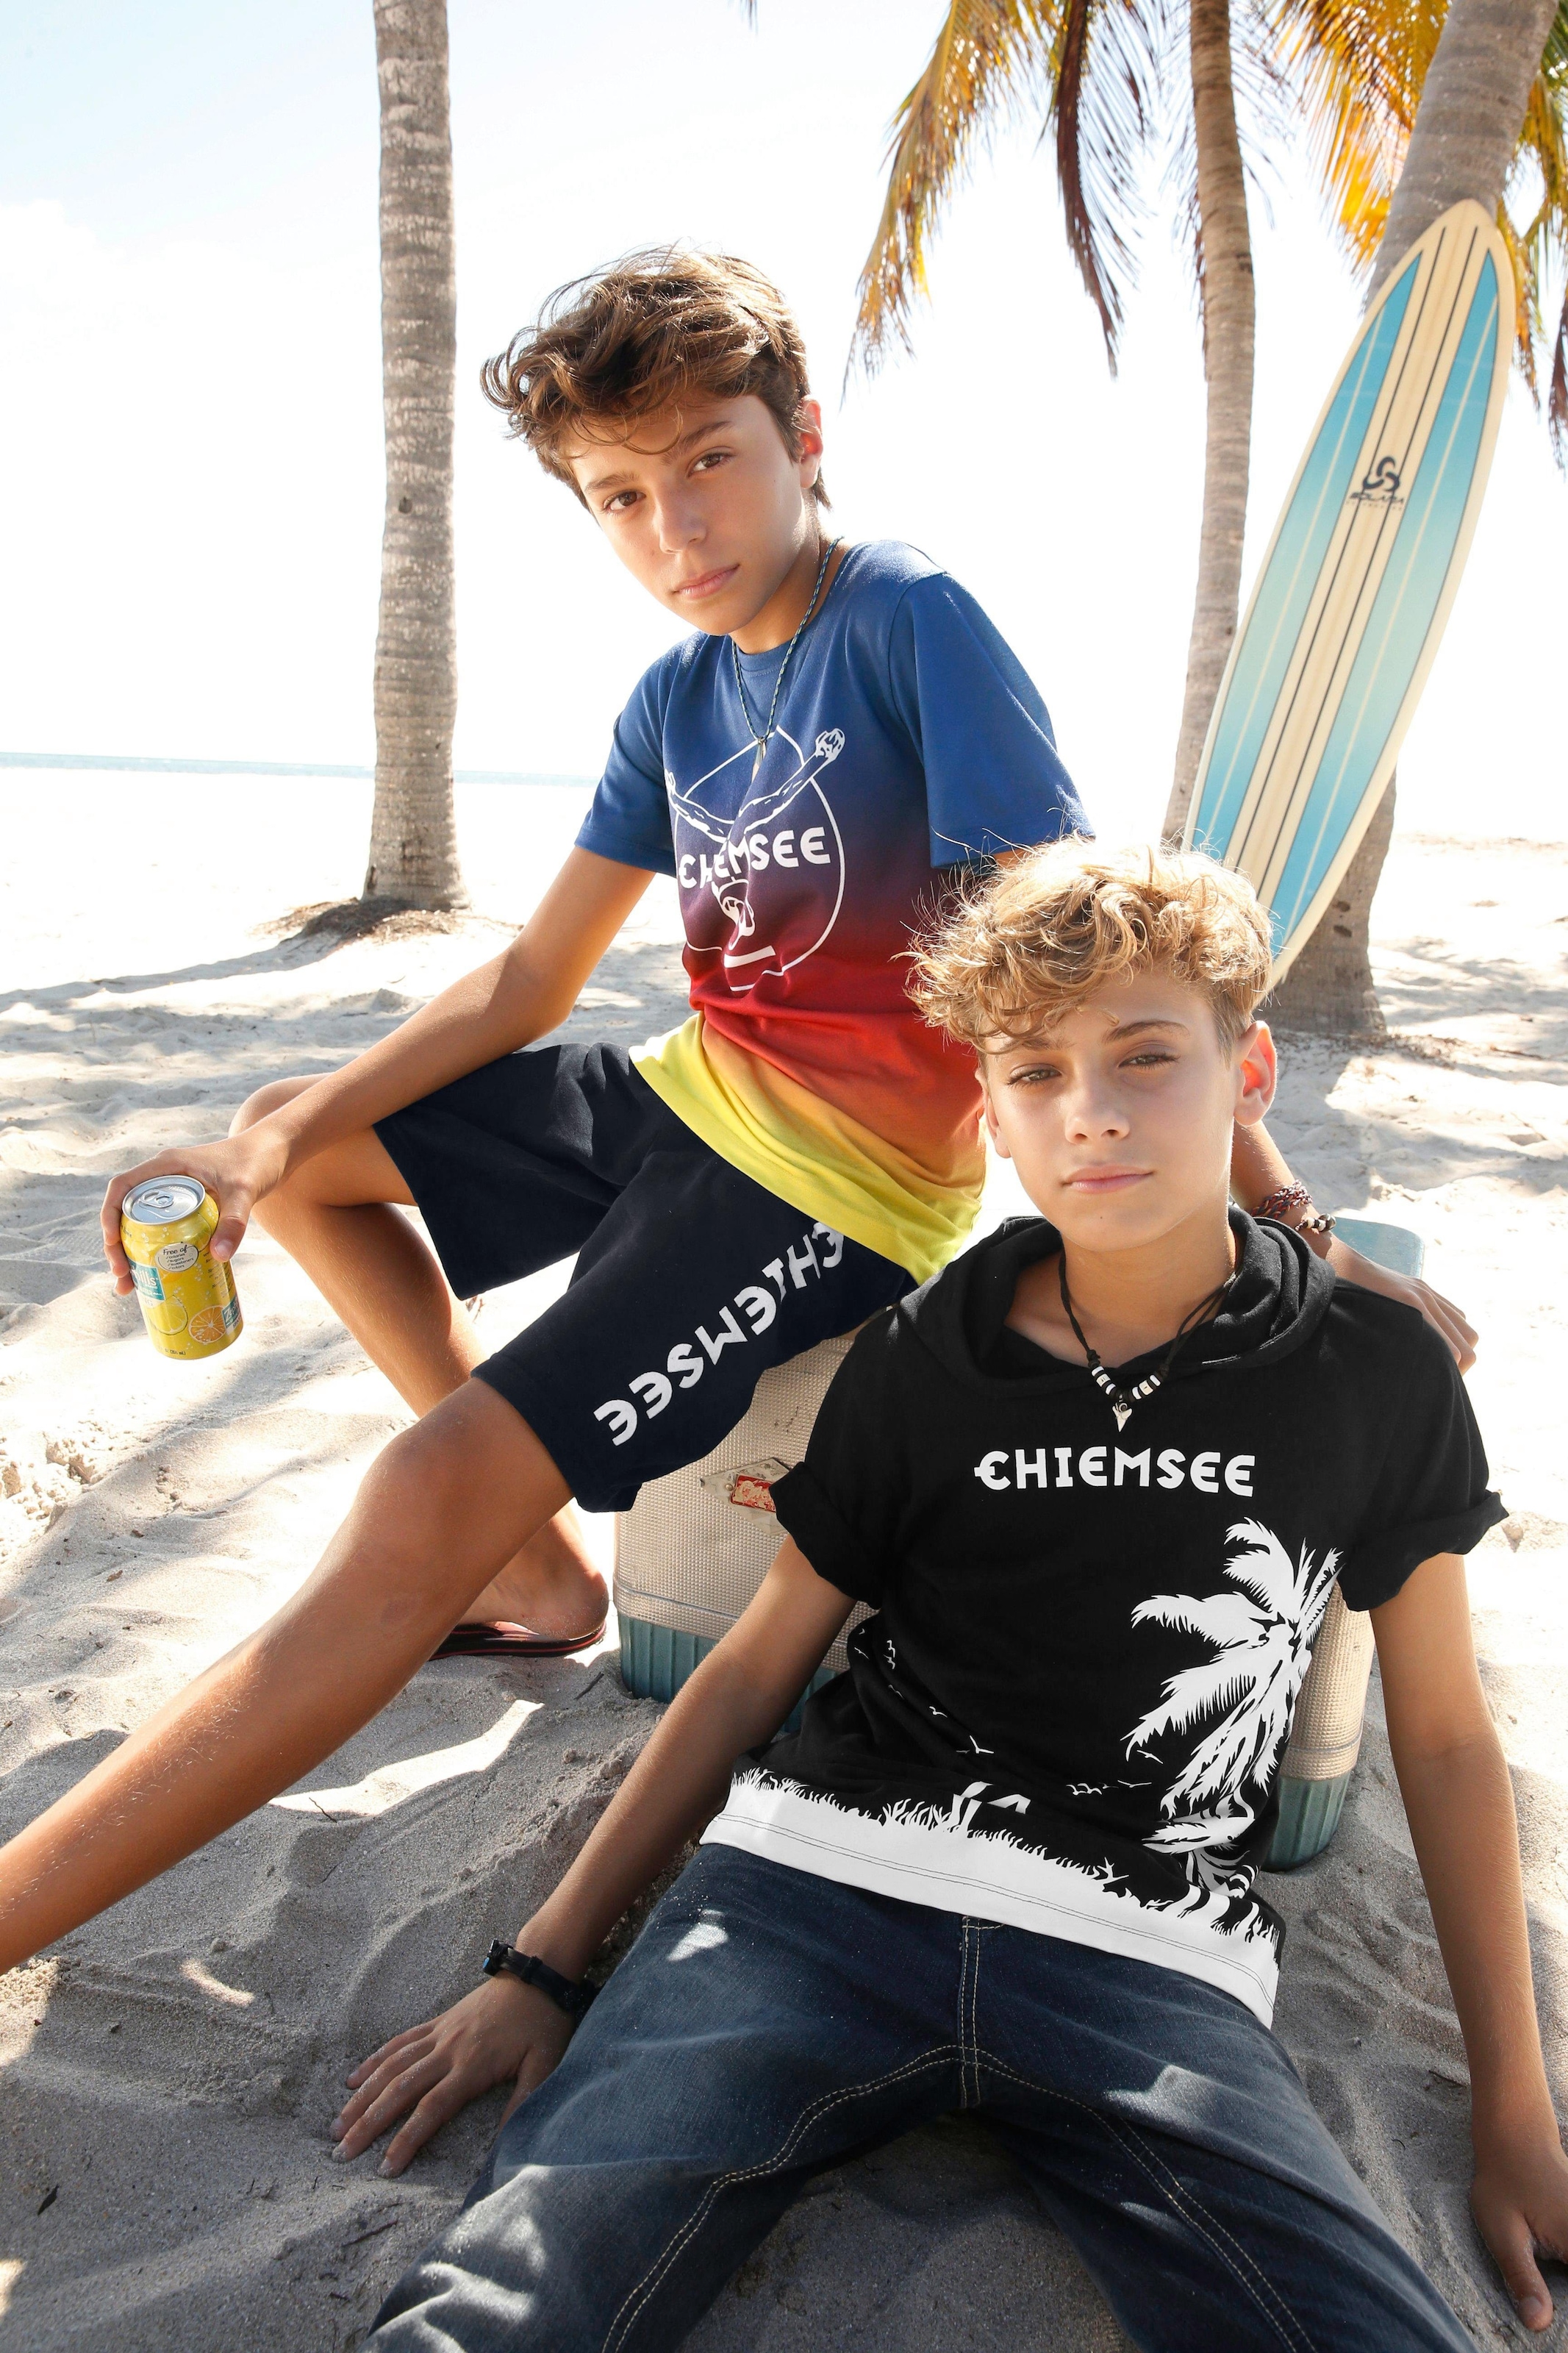 Chiemsee T-Shirt, im Farbverlauf mit Druck vorn günstig bestellen |  Jelmoli-Versand